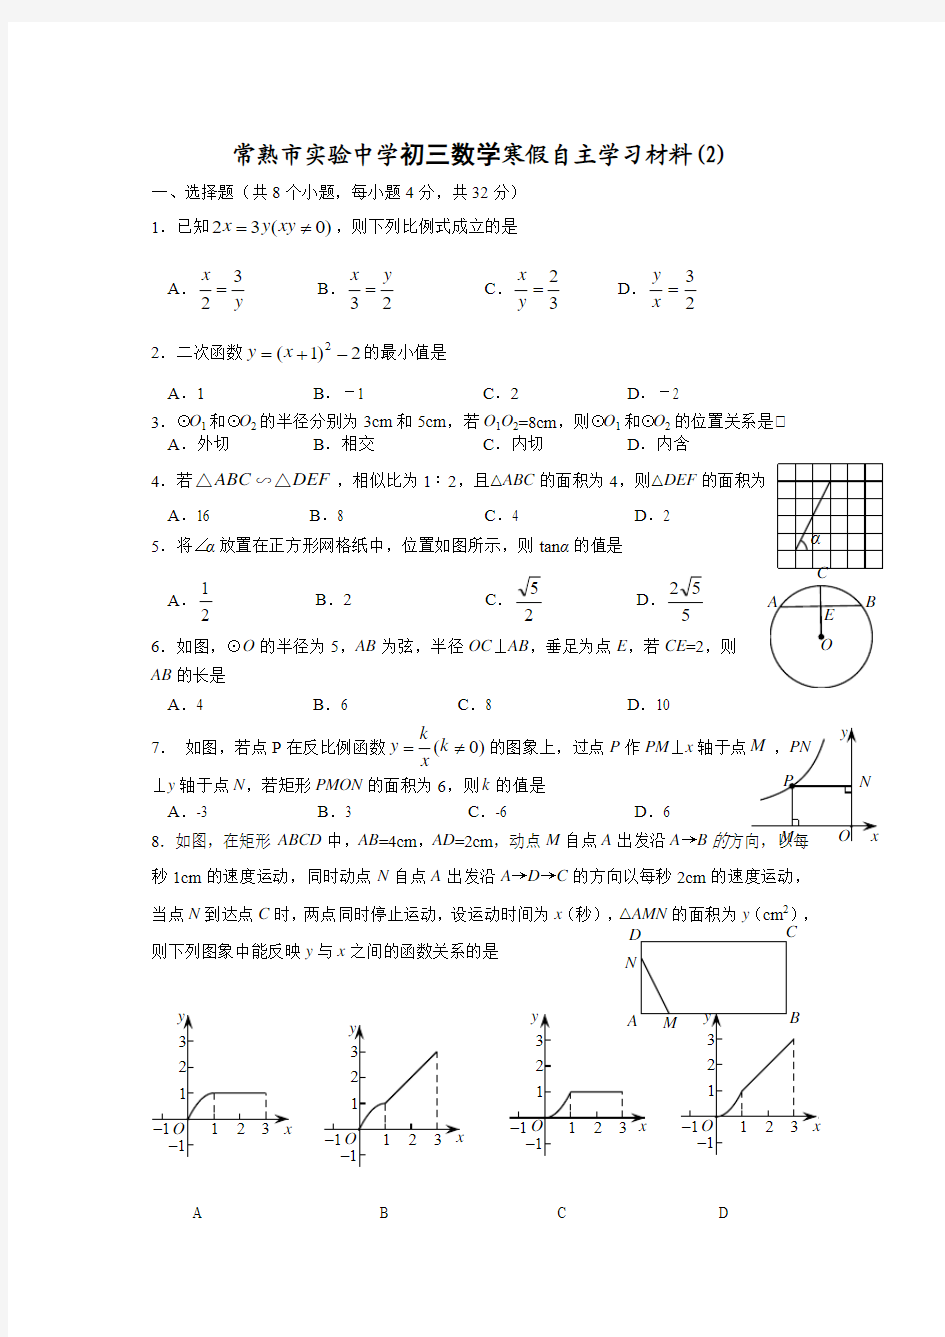 常熟初三数学寒假自主学习材料(2)